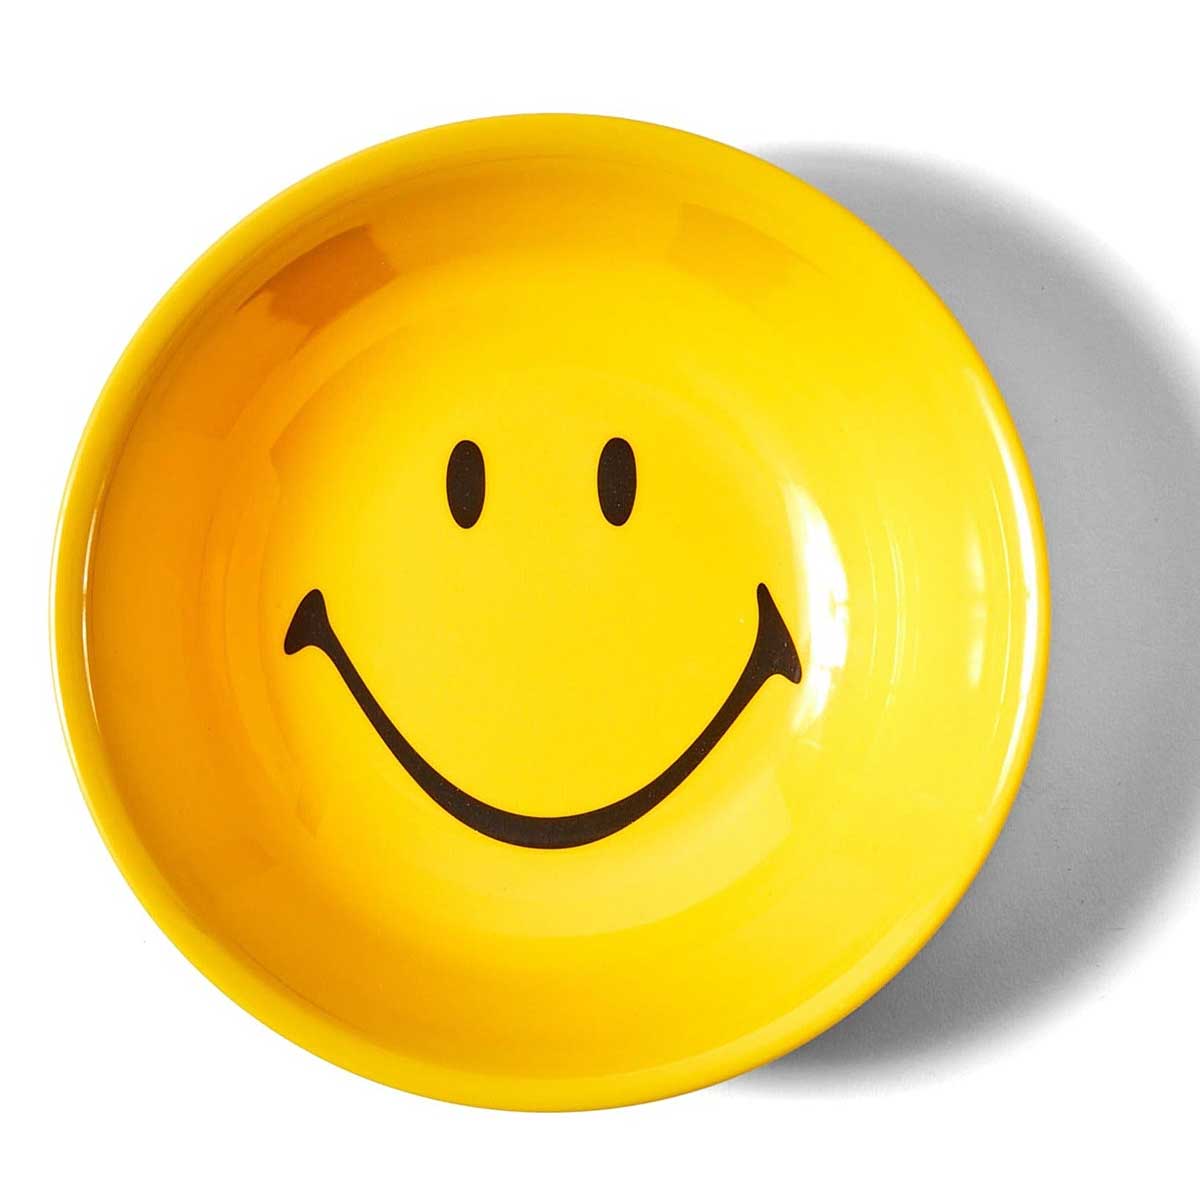 Market Smiley Bowl 4 Piece Set, Yellow